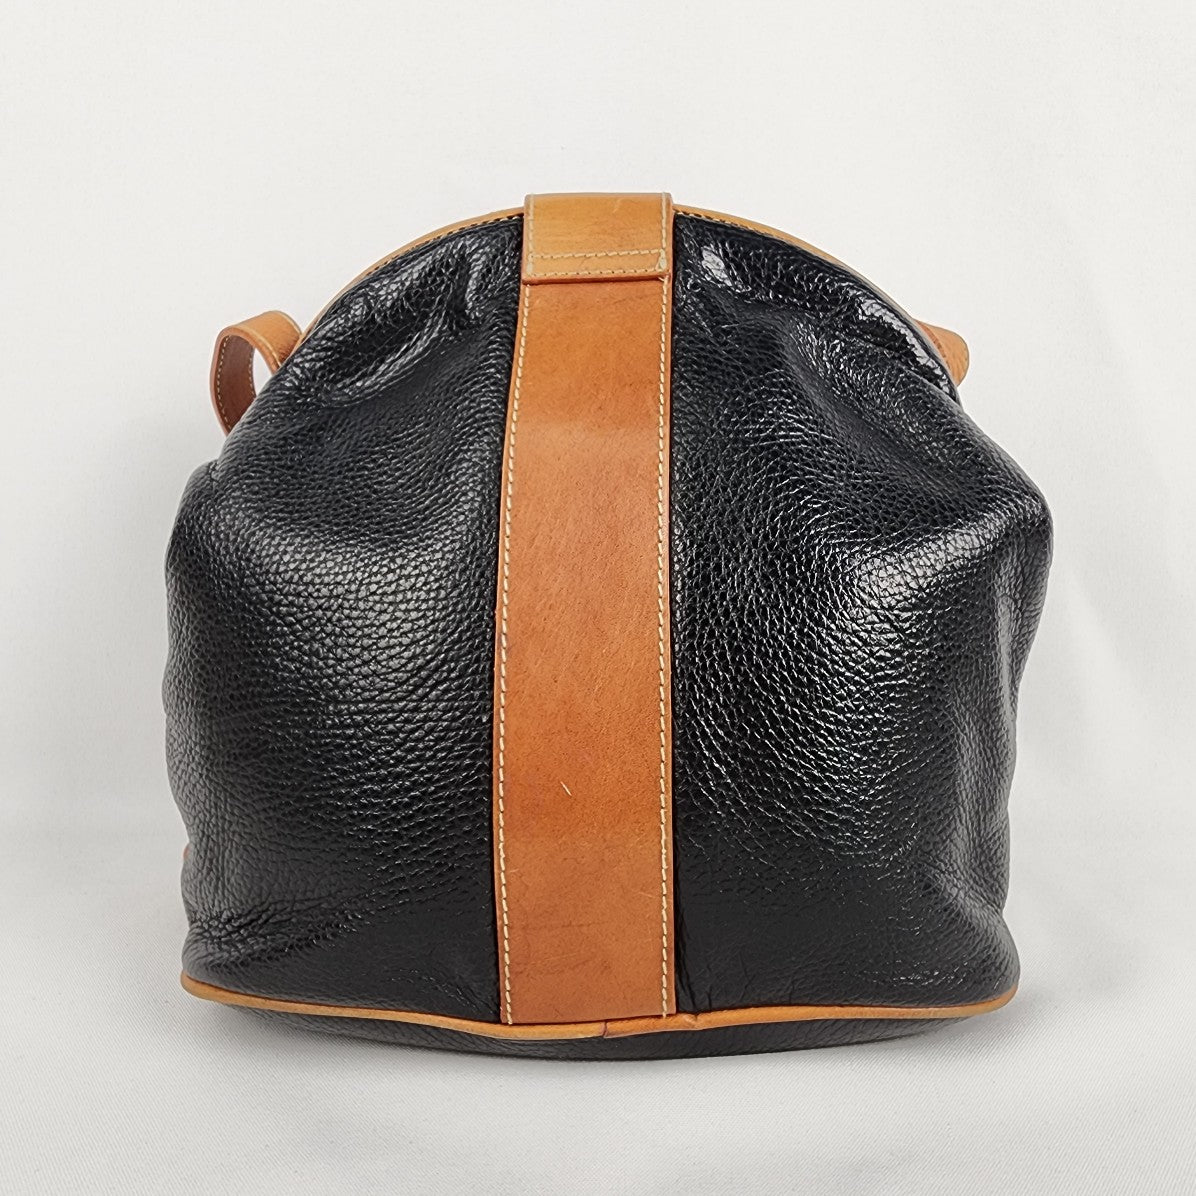 Vintage Brown & Black Leather Shoulder Purse